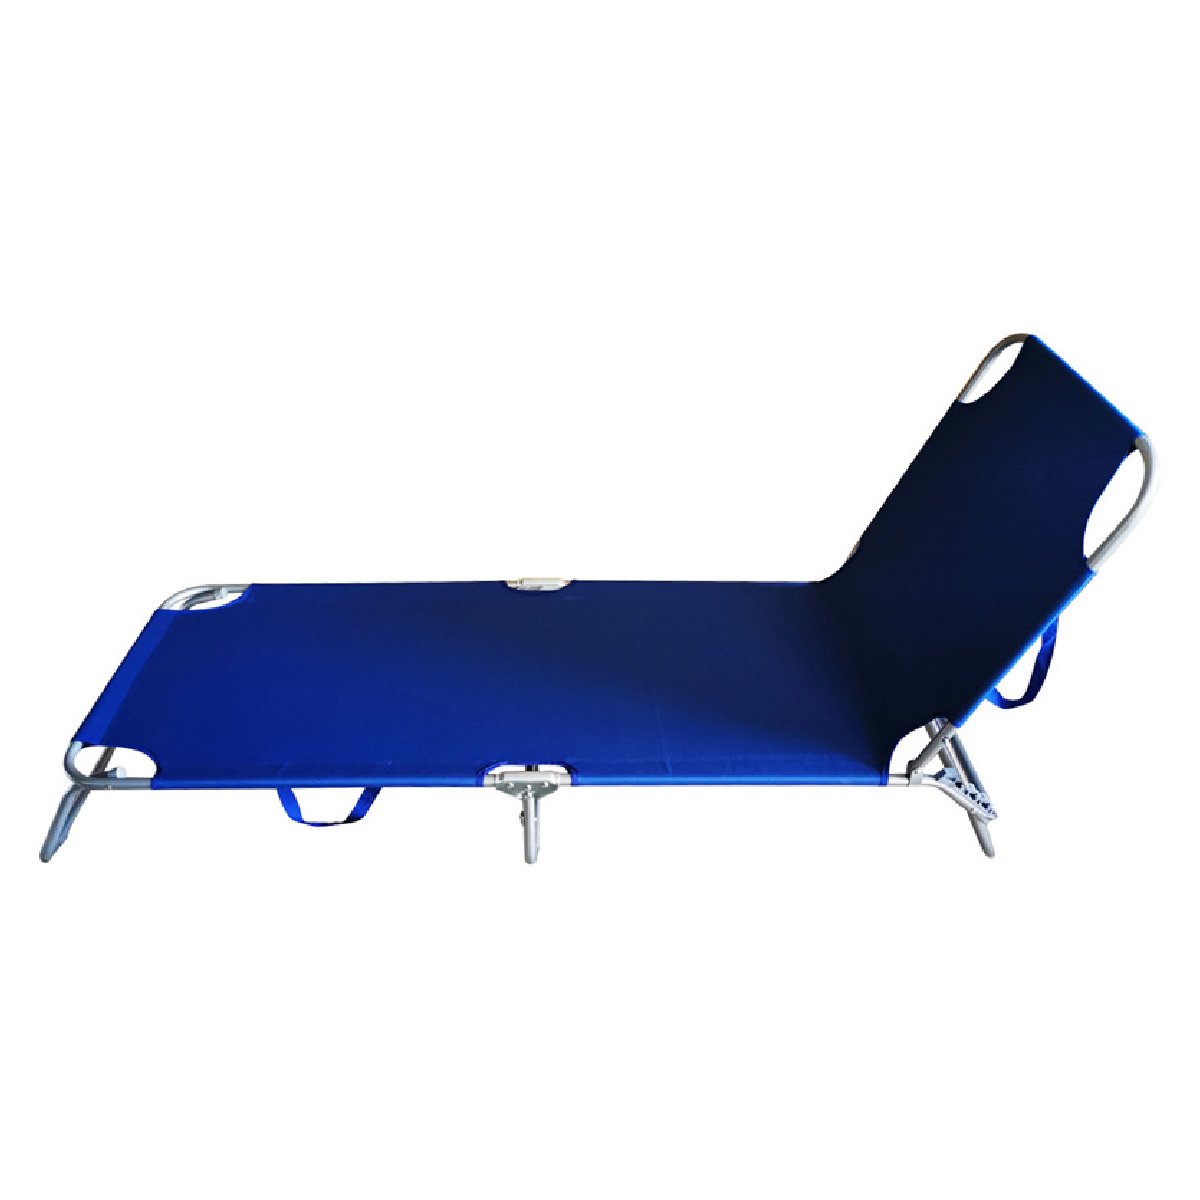 Пляжный лежак PL-01 (103770)Купить